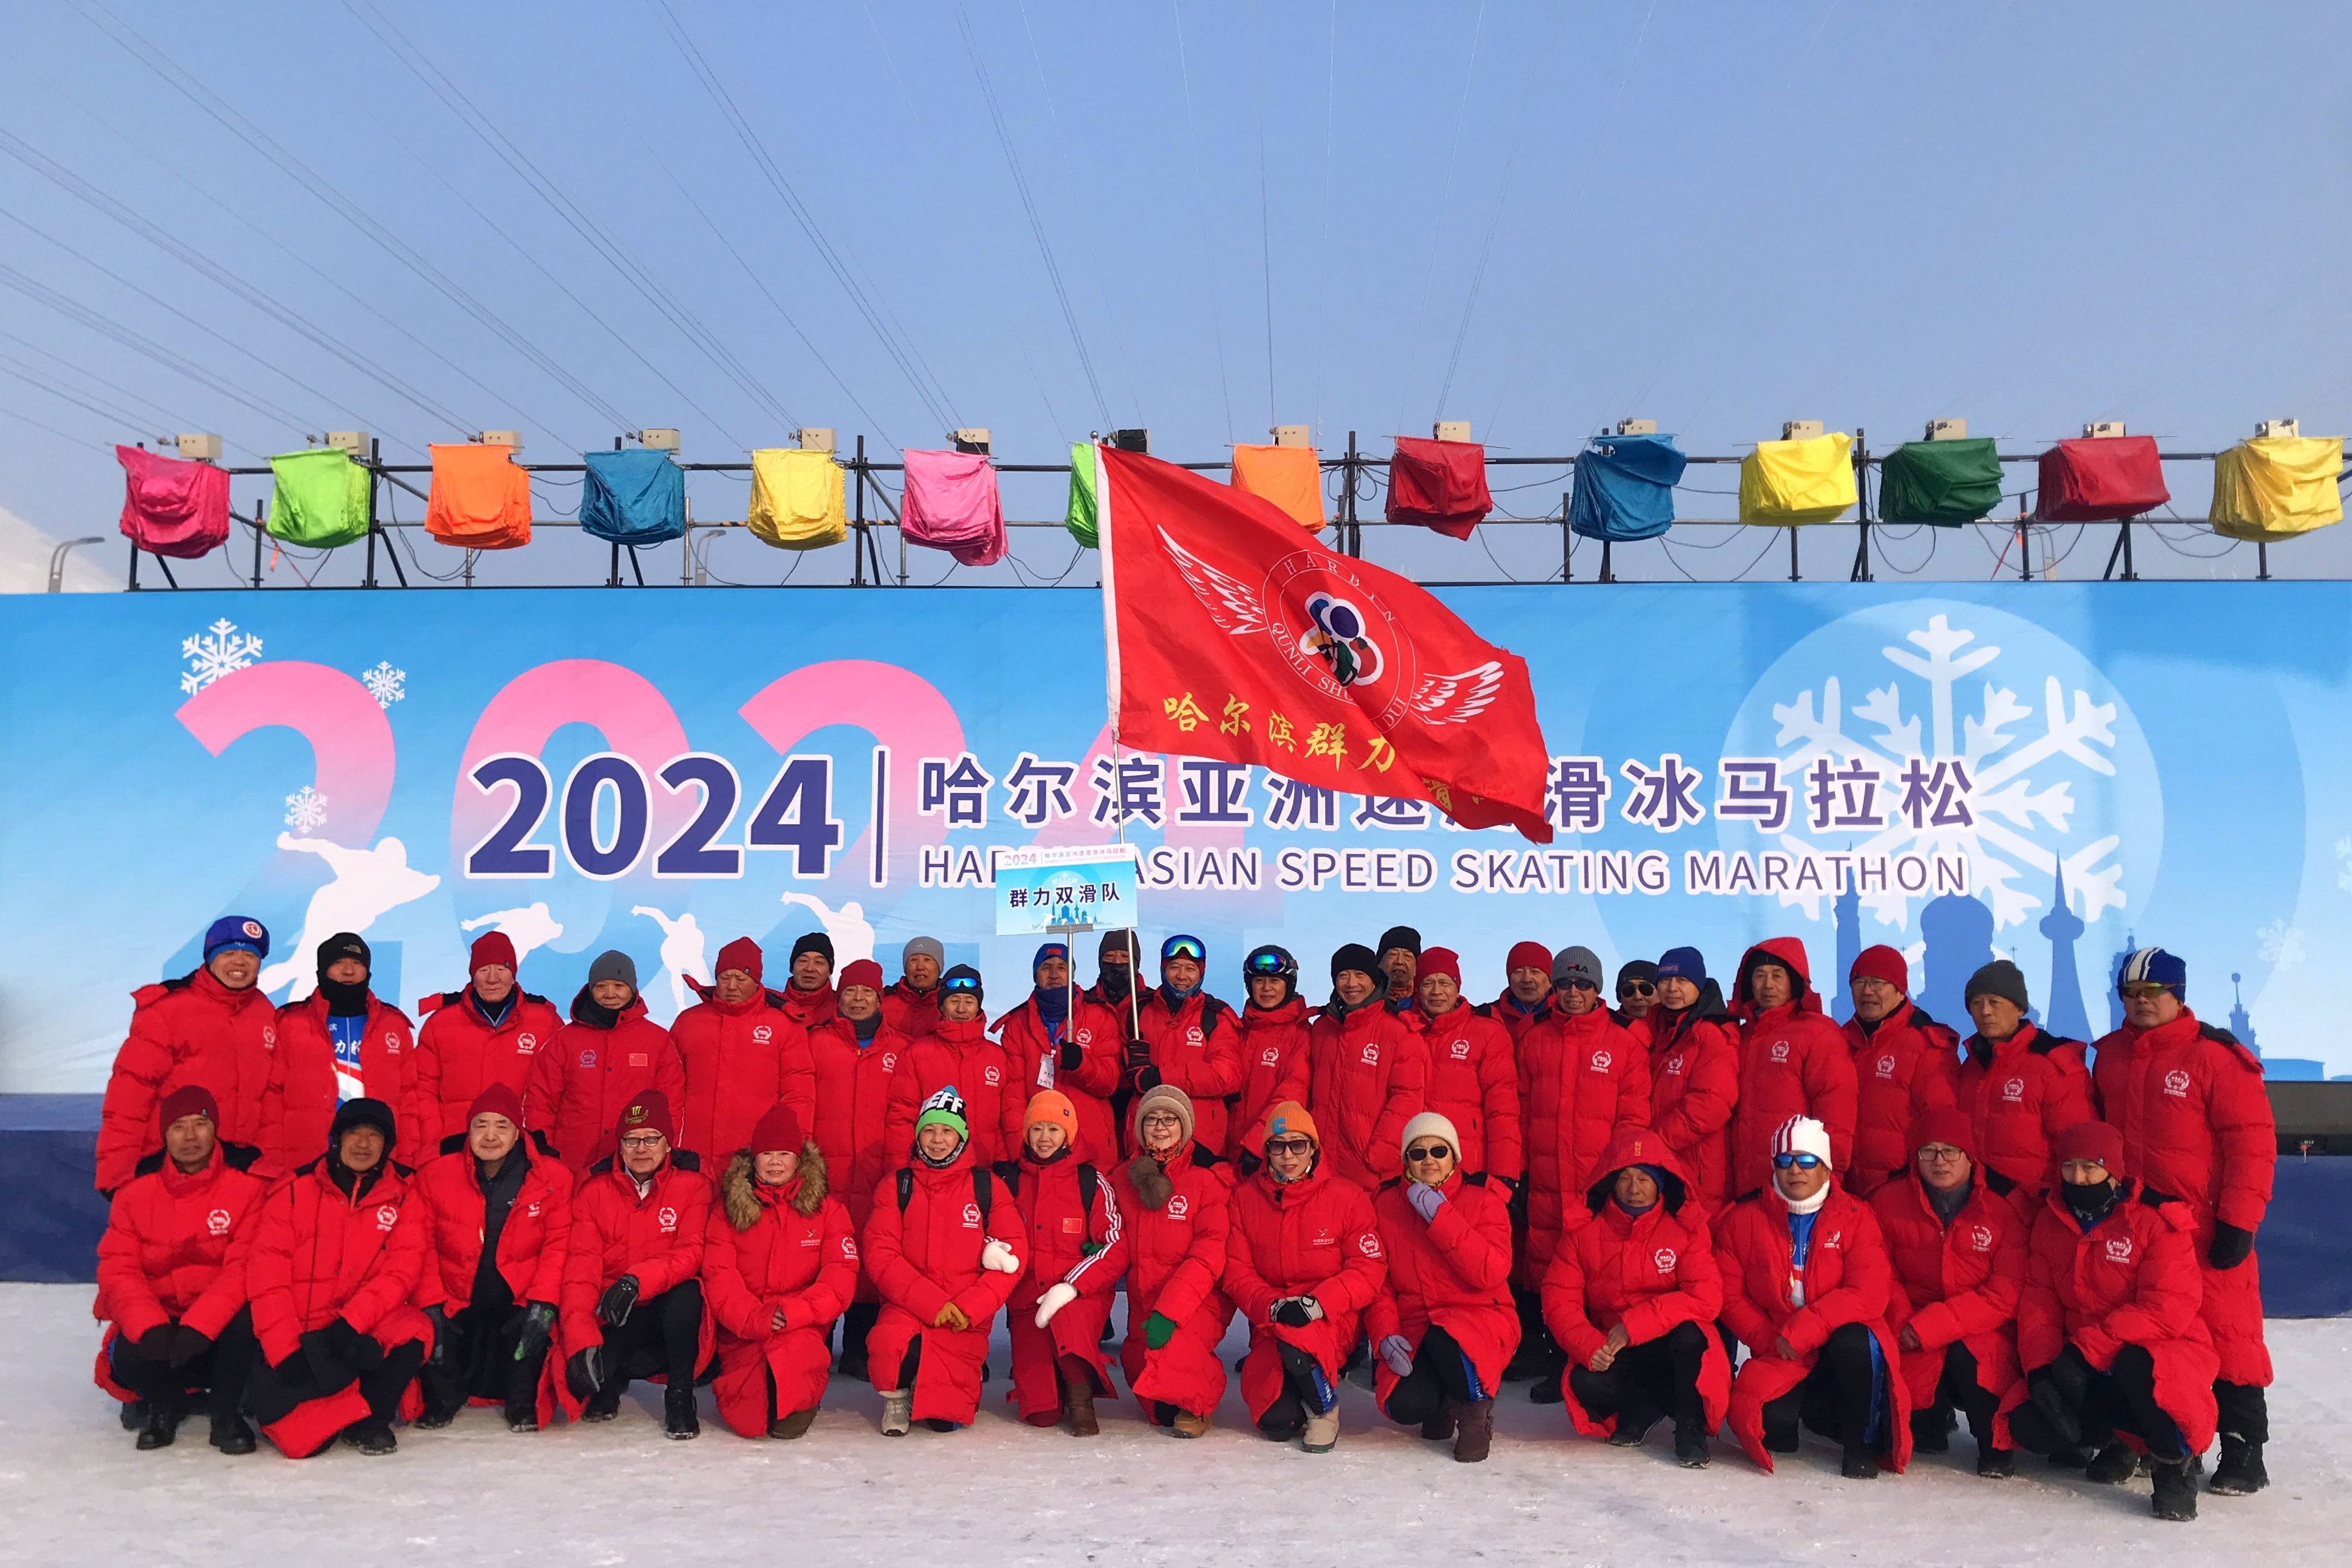 2024年哈尔滨亚洲速度滑冰马拉松比赛27日举行